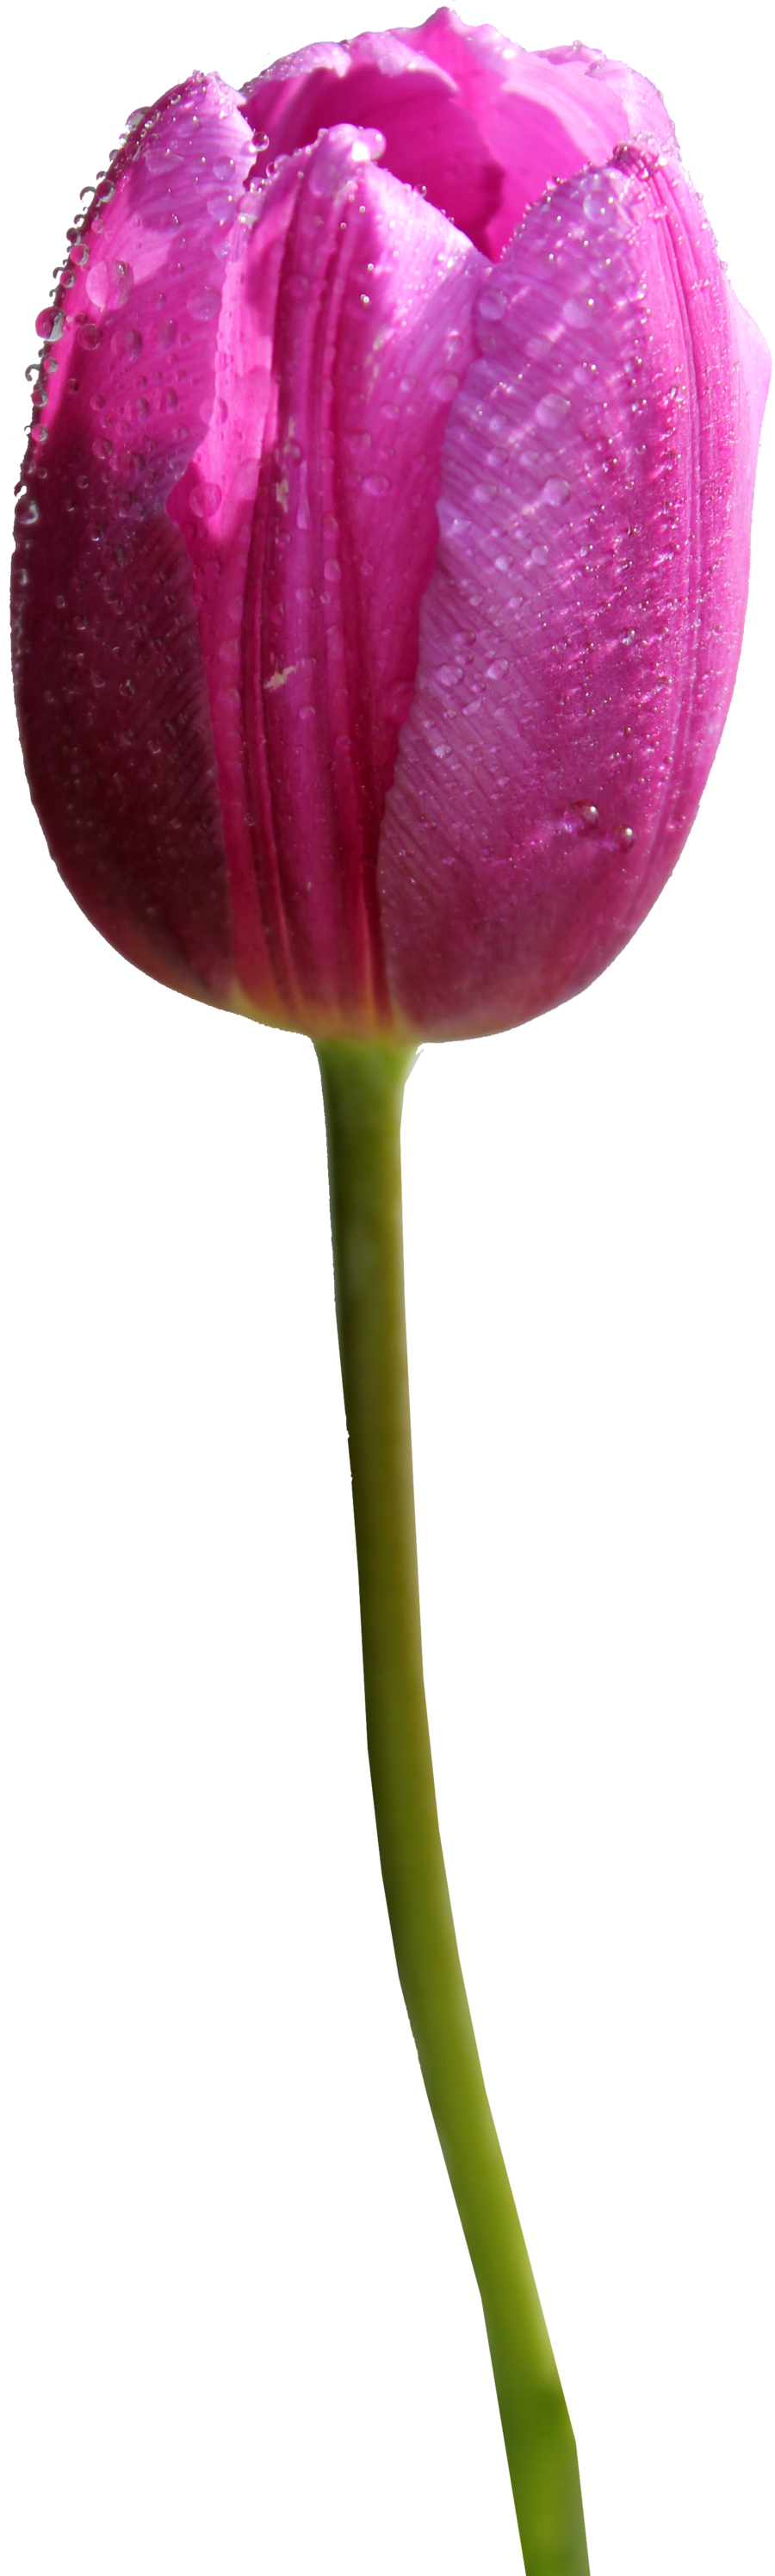 Rose Tulips